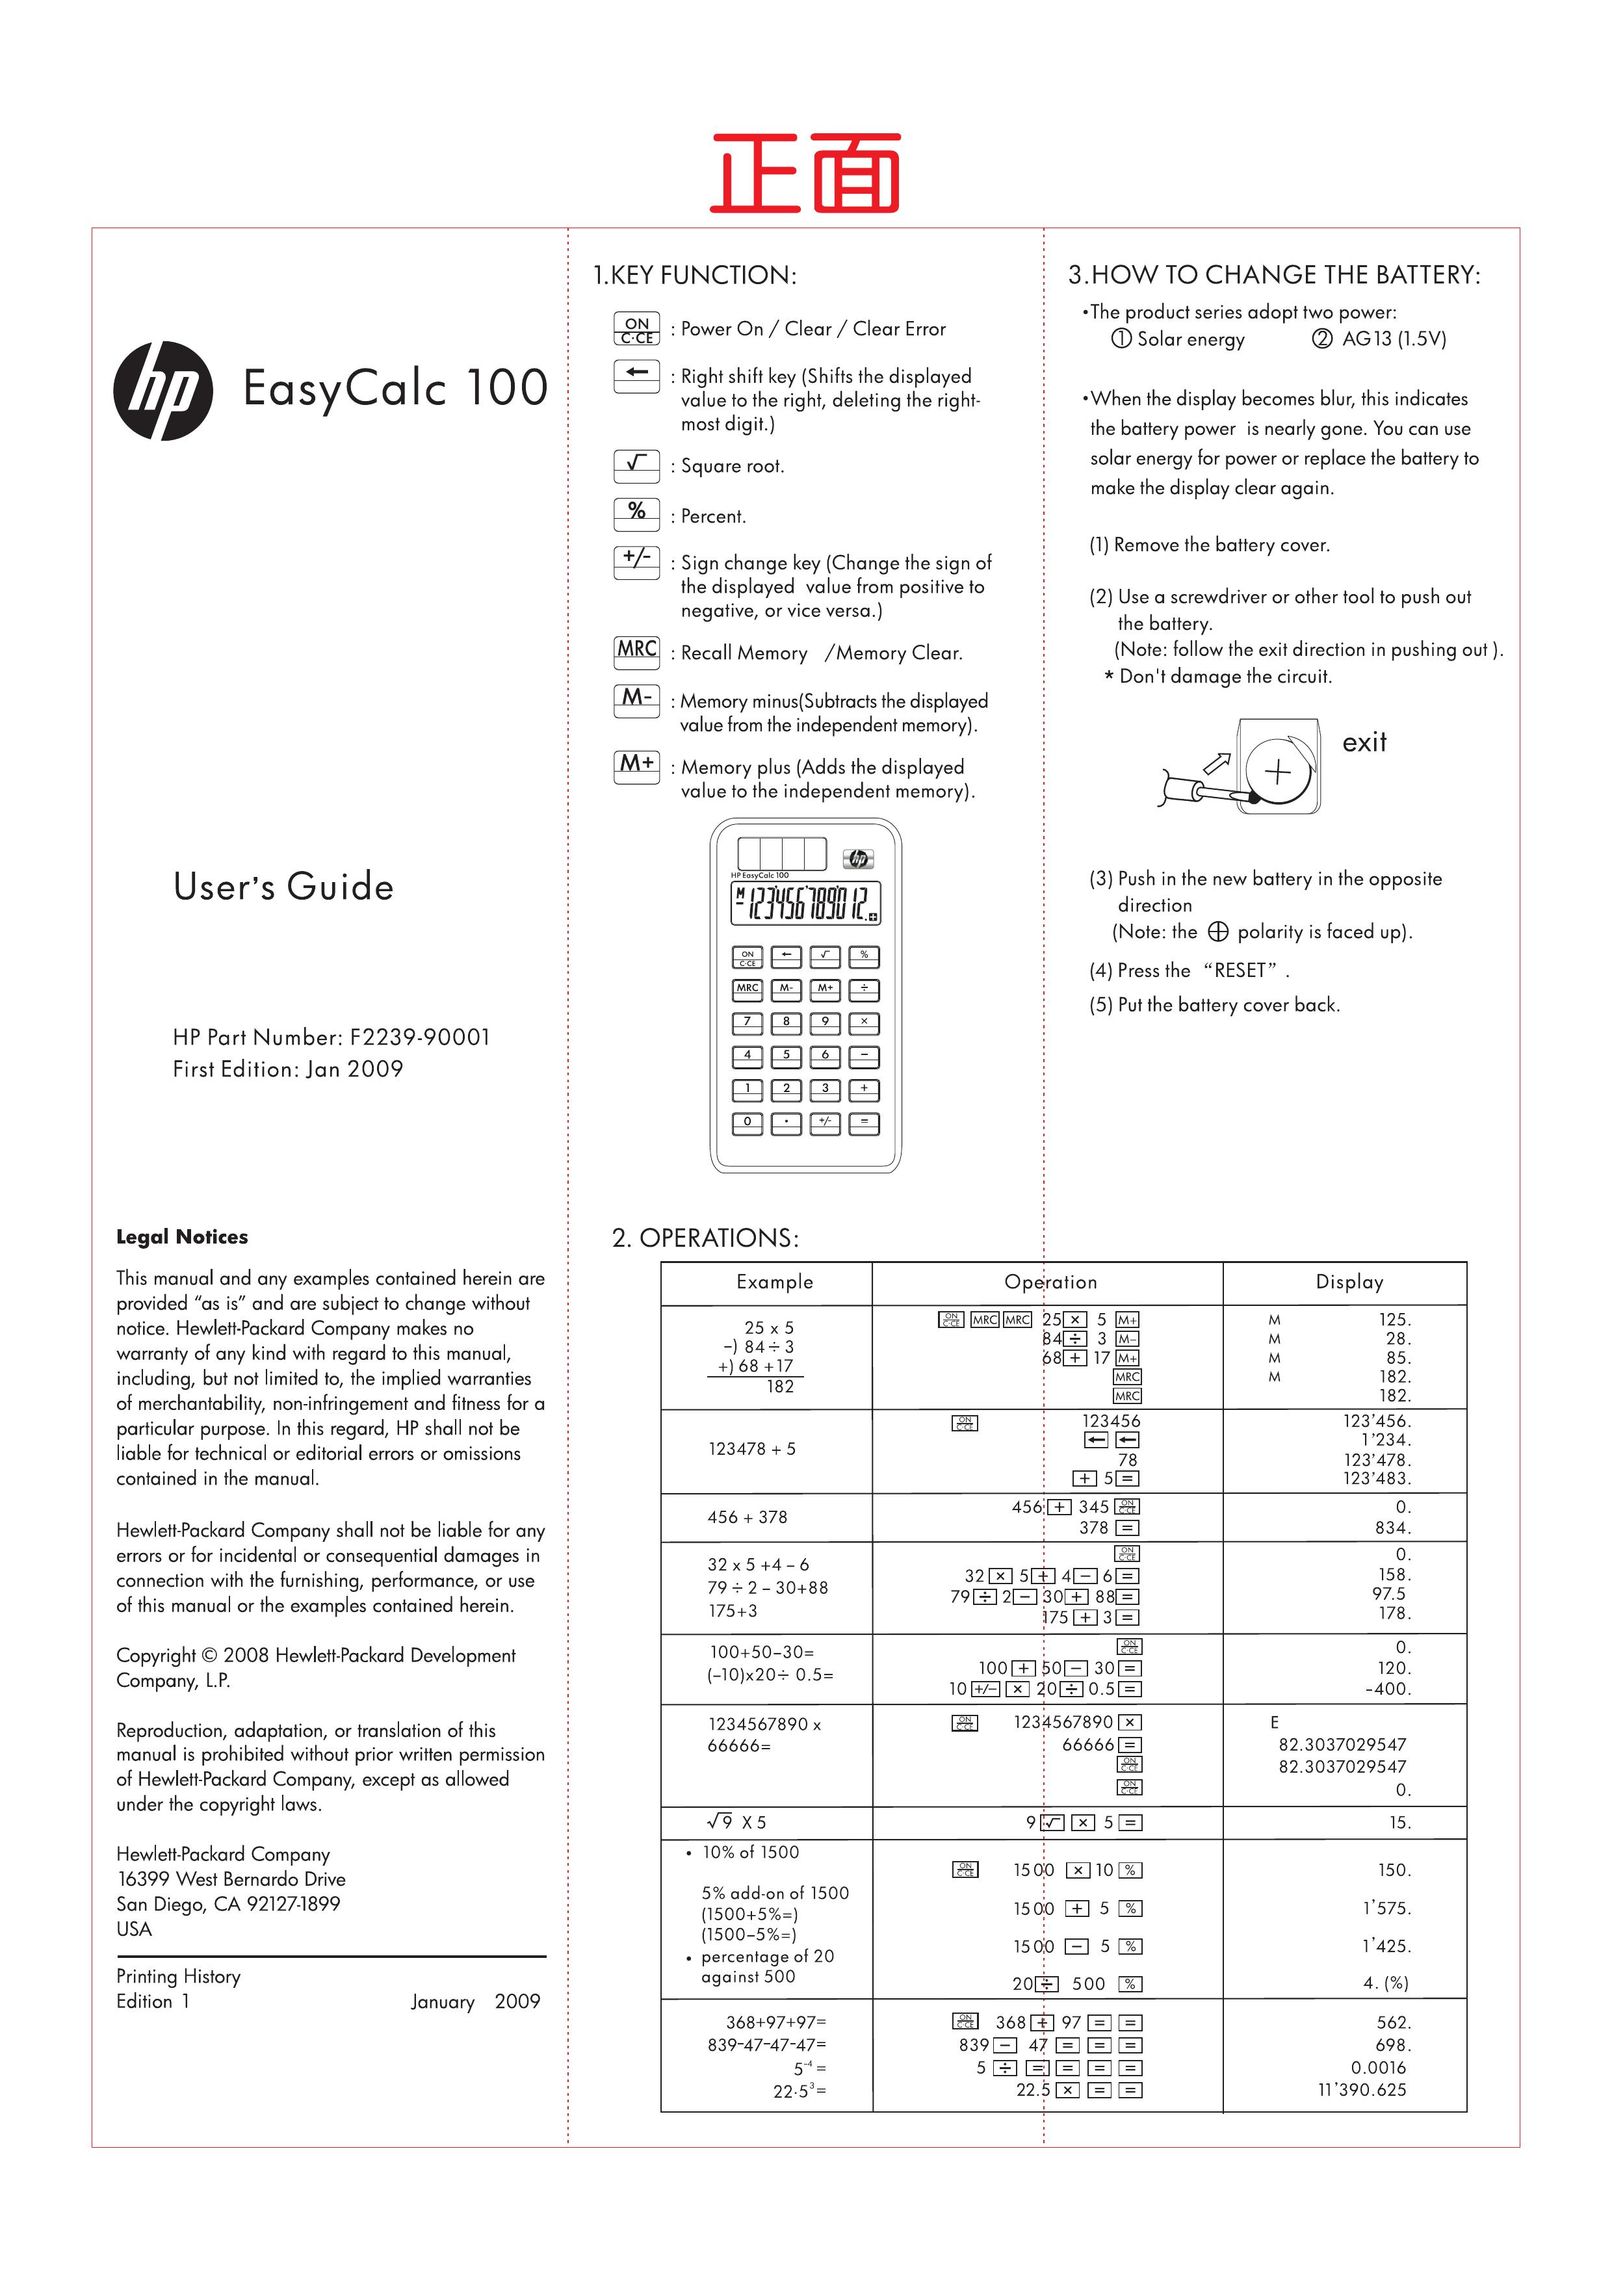 HP (Hewlett-Packard) 100 Printer User Manual